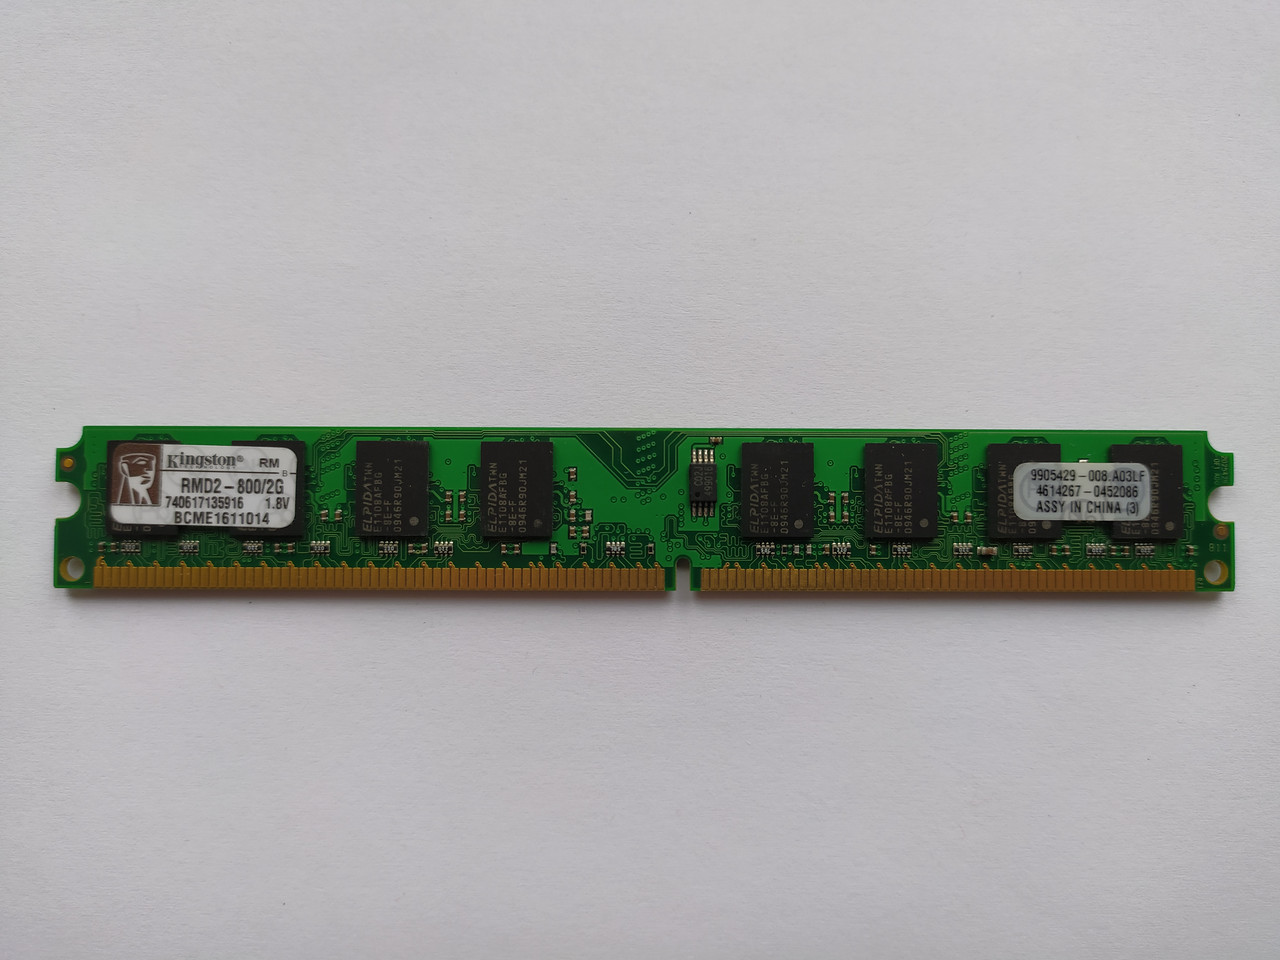 Оперативная память Kingston DDR2 2Gb 800MHz PC2-6400U (RMD2-800/2G) Б/Нет в наличии